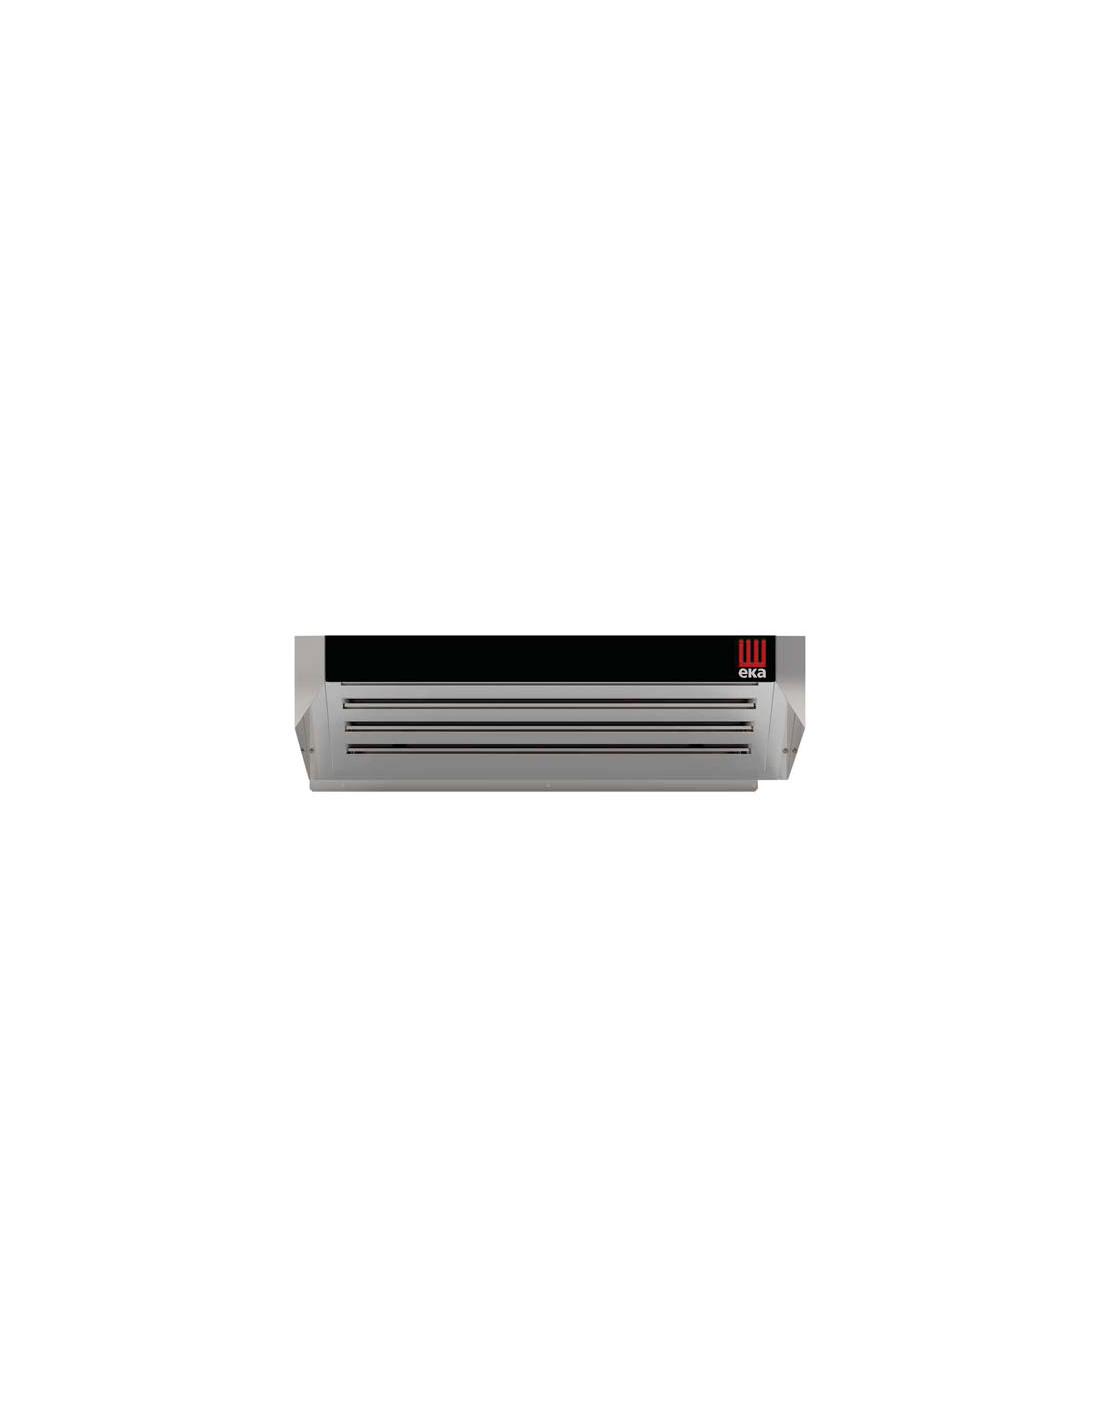 Cappa a condensazione - Per forni 4 teglie con vapore - Alimentazione monofase 230V - cm 78.4 x 90.7 x 25.5 h